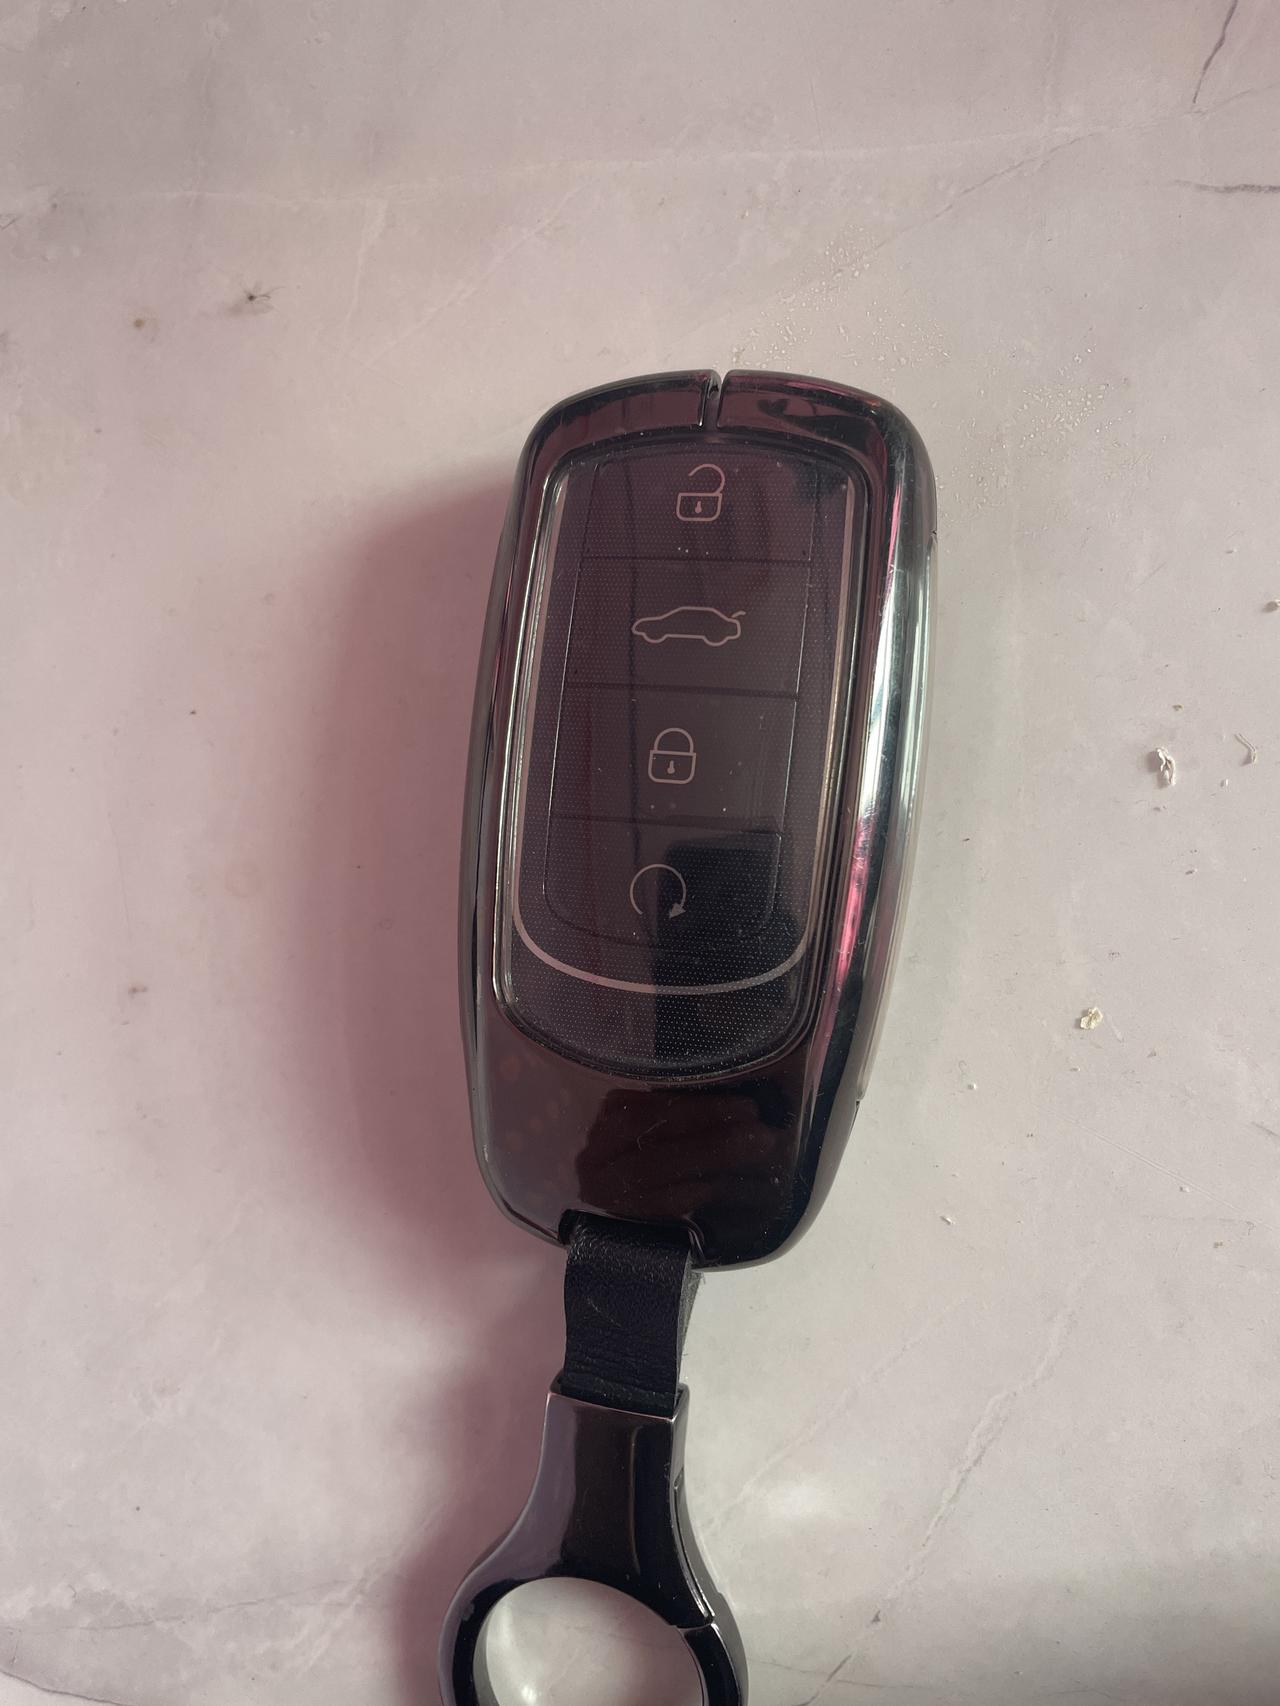 奇瑞瑞虎8 各位广大的车友 最近都不想带钥匙出门 没有啥方法可以用手机上互联操作开车啥的？